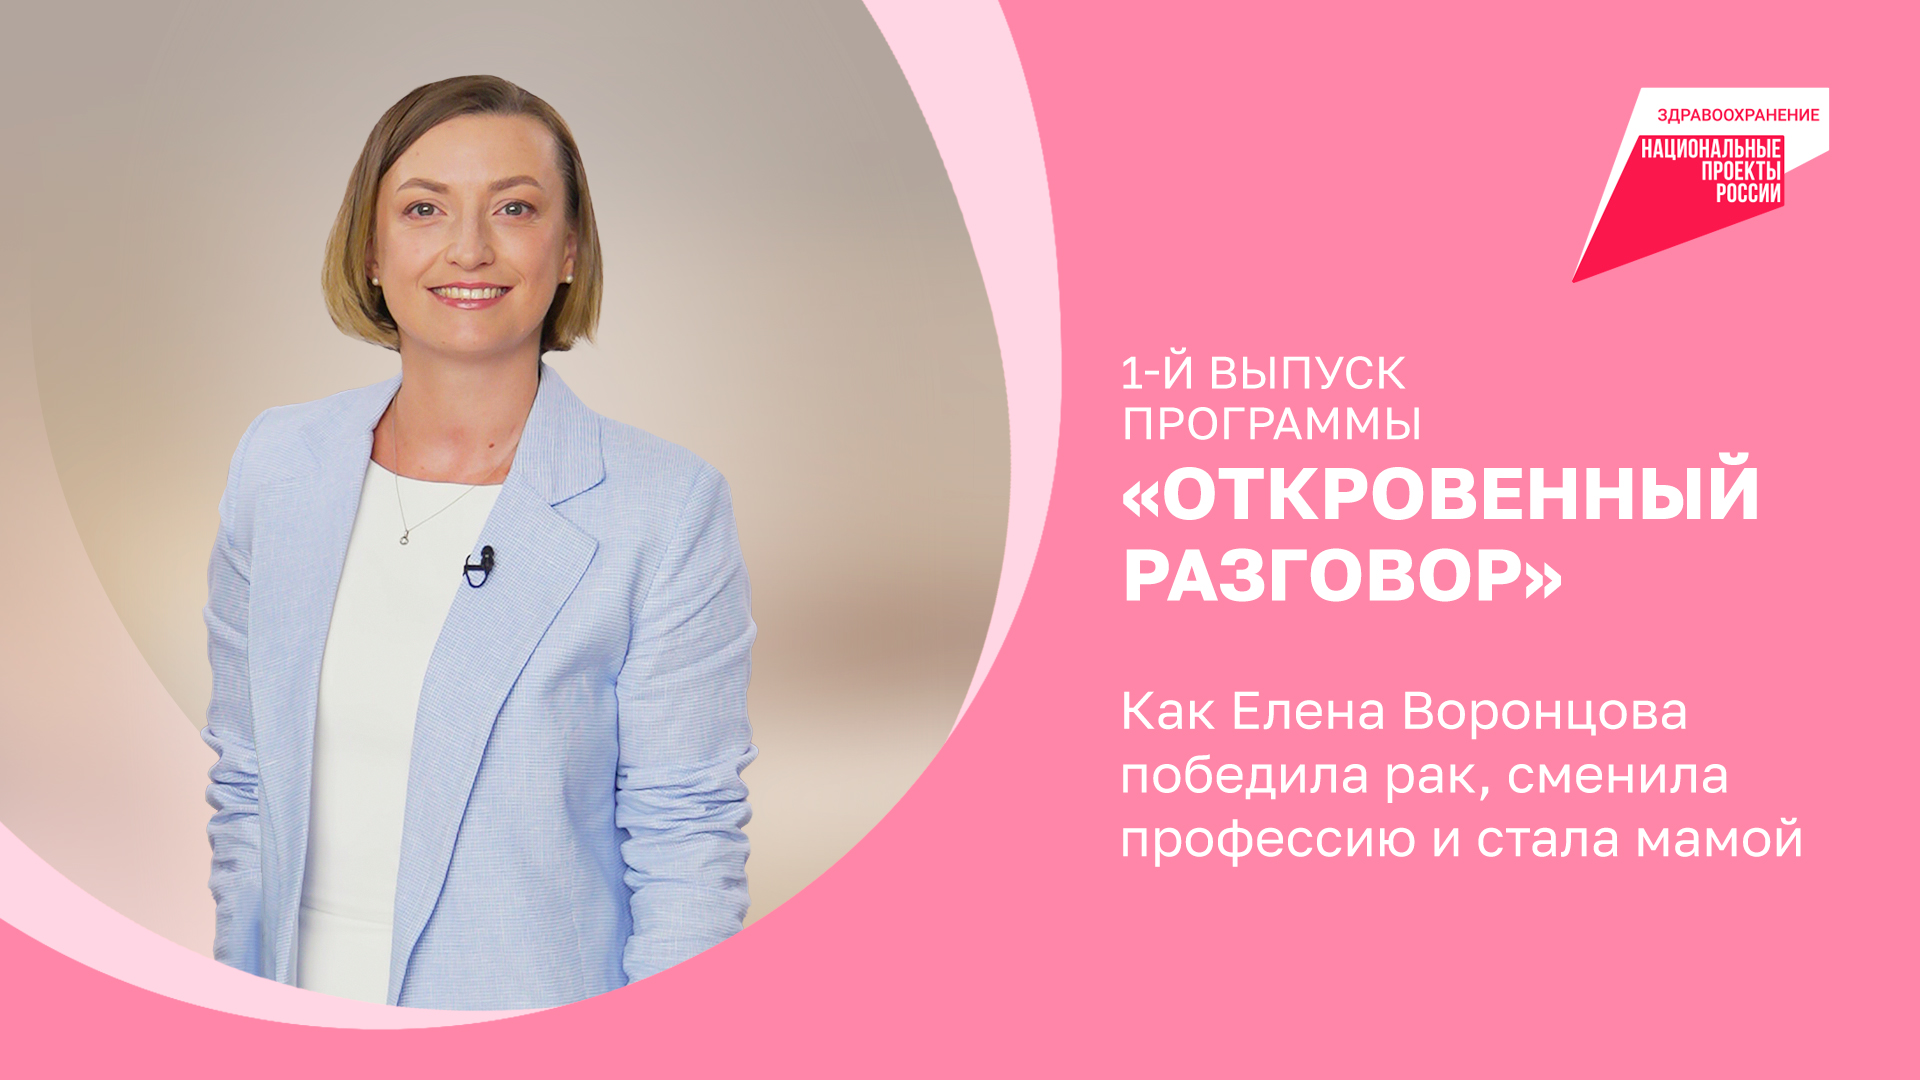 Как Елена Воронцова победила рак, сменила профессию и стала мамой